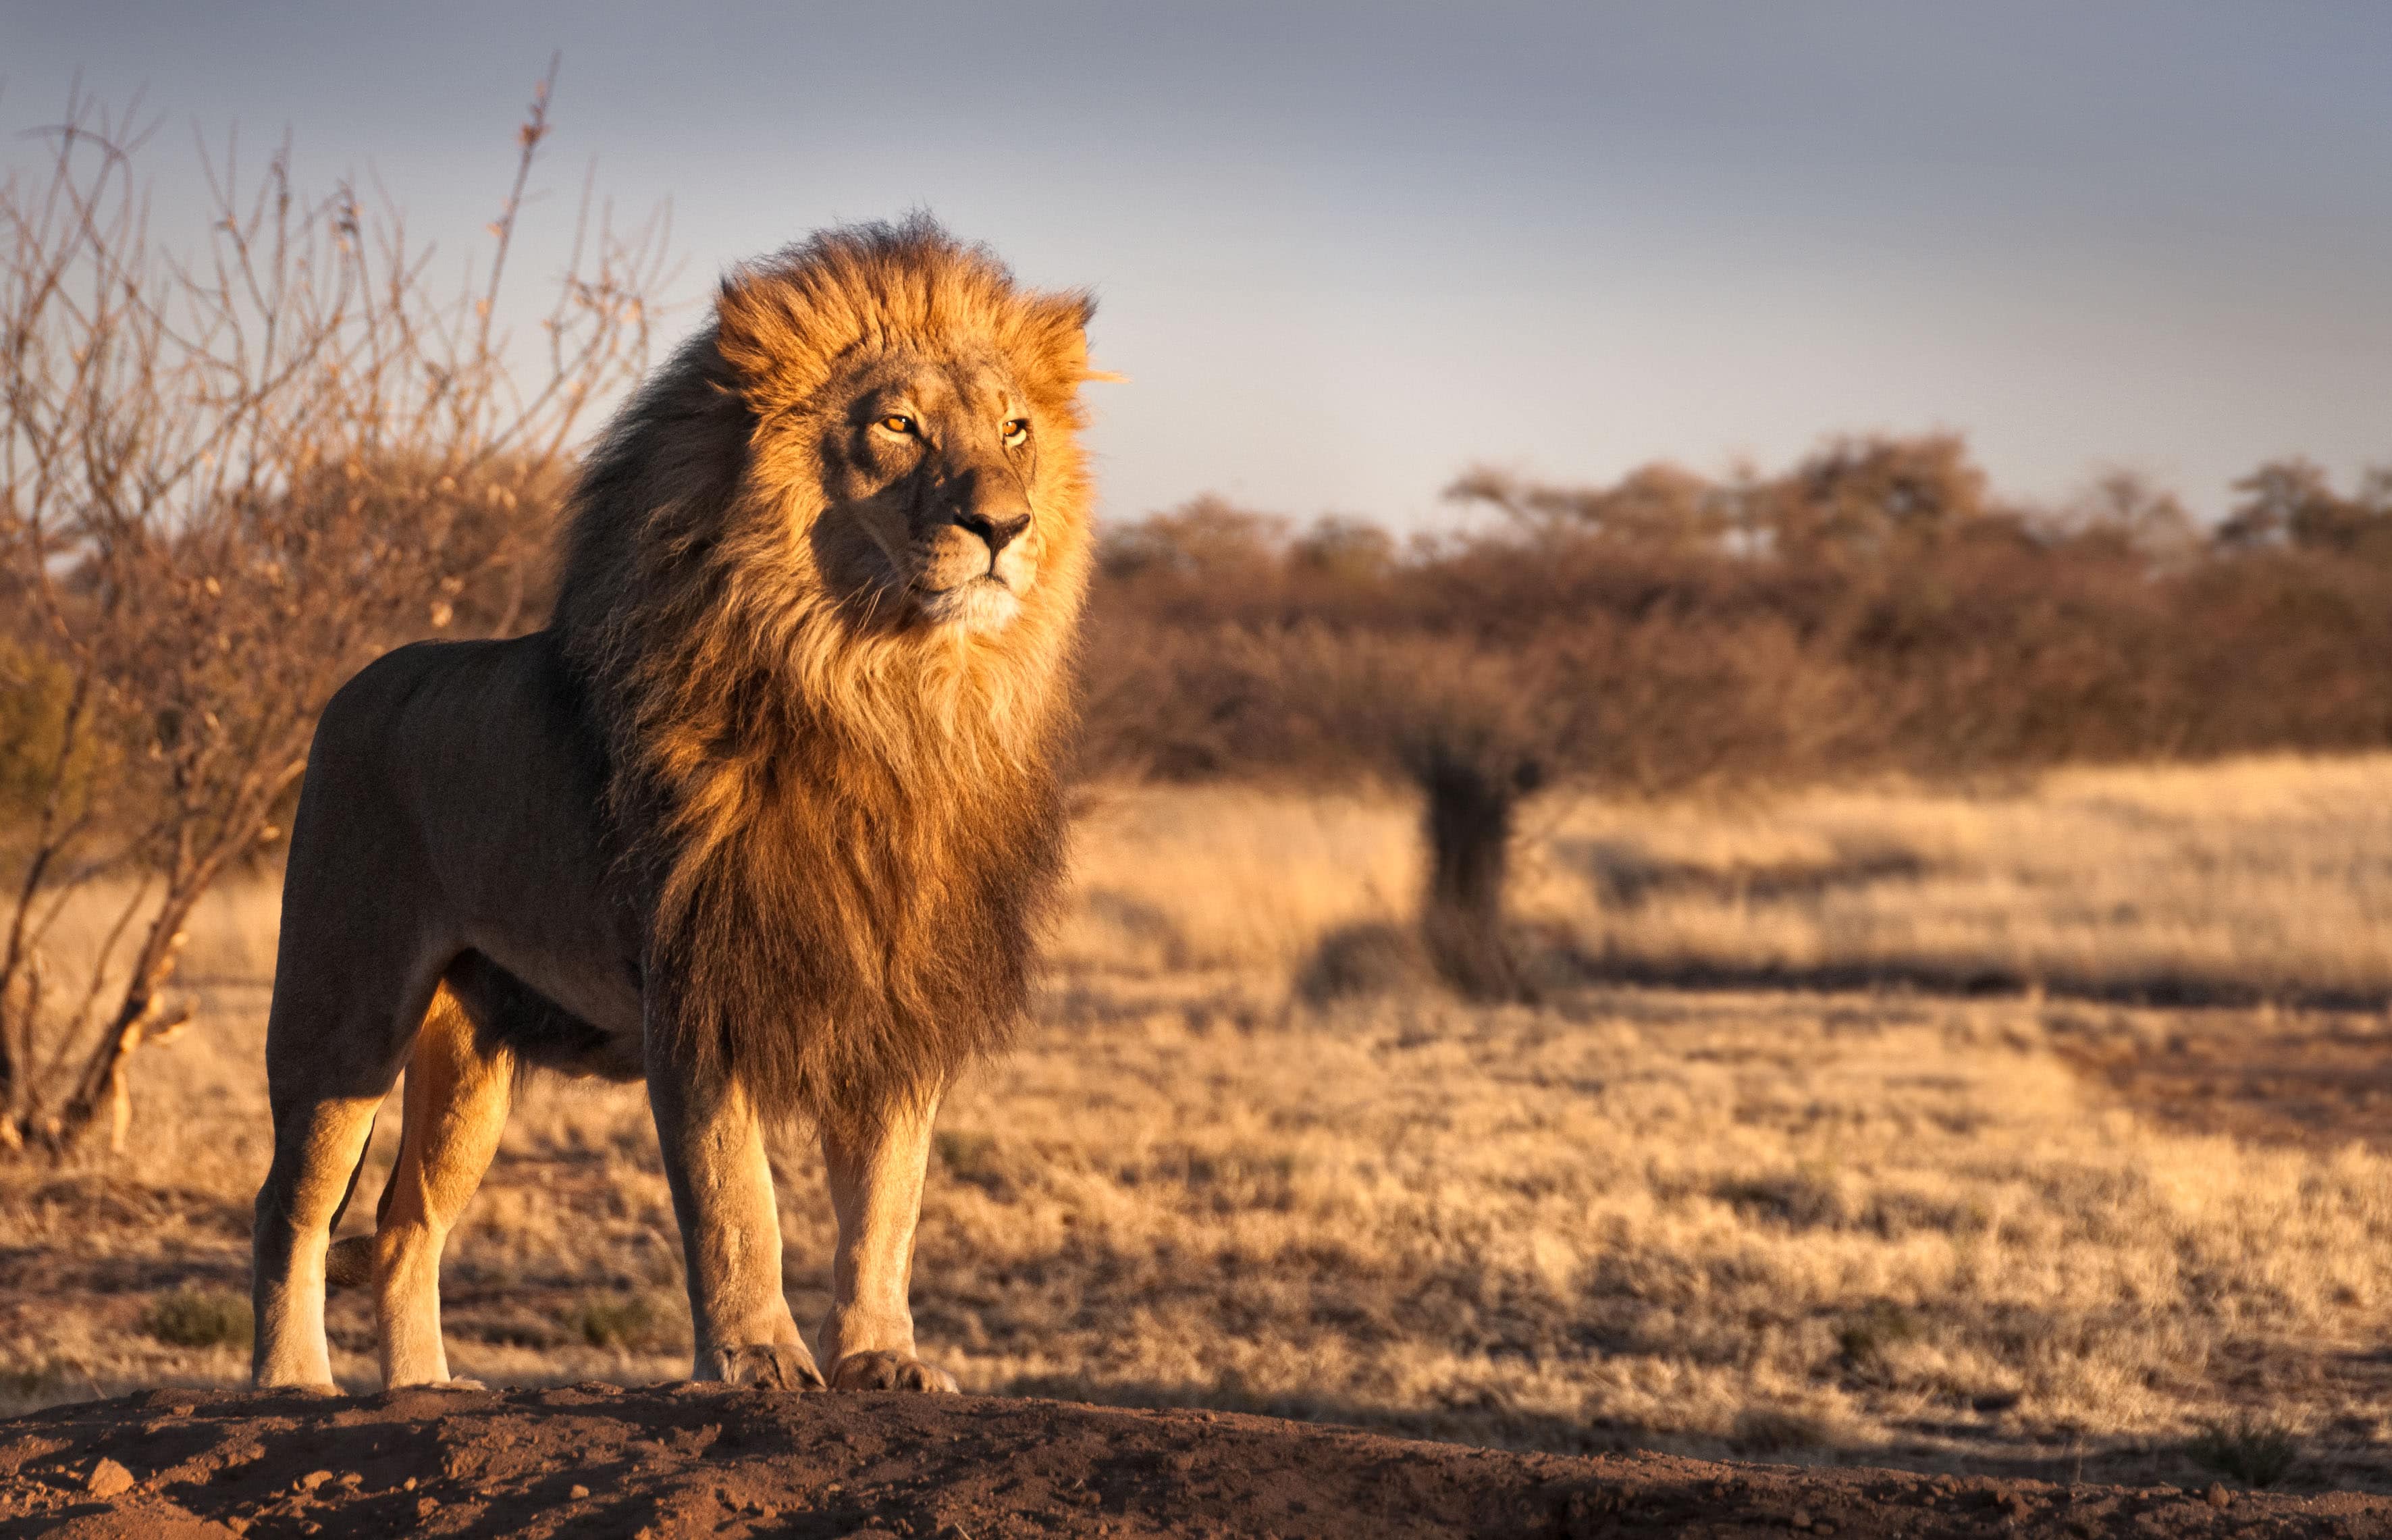 egy kutatás megállapította, hogy az emberi hang félelmetesebb a vadon élő állatok számára, mint az oroszlánóké